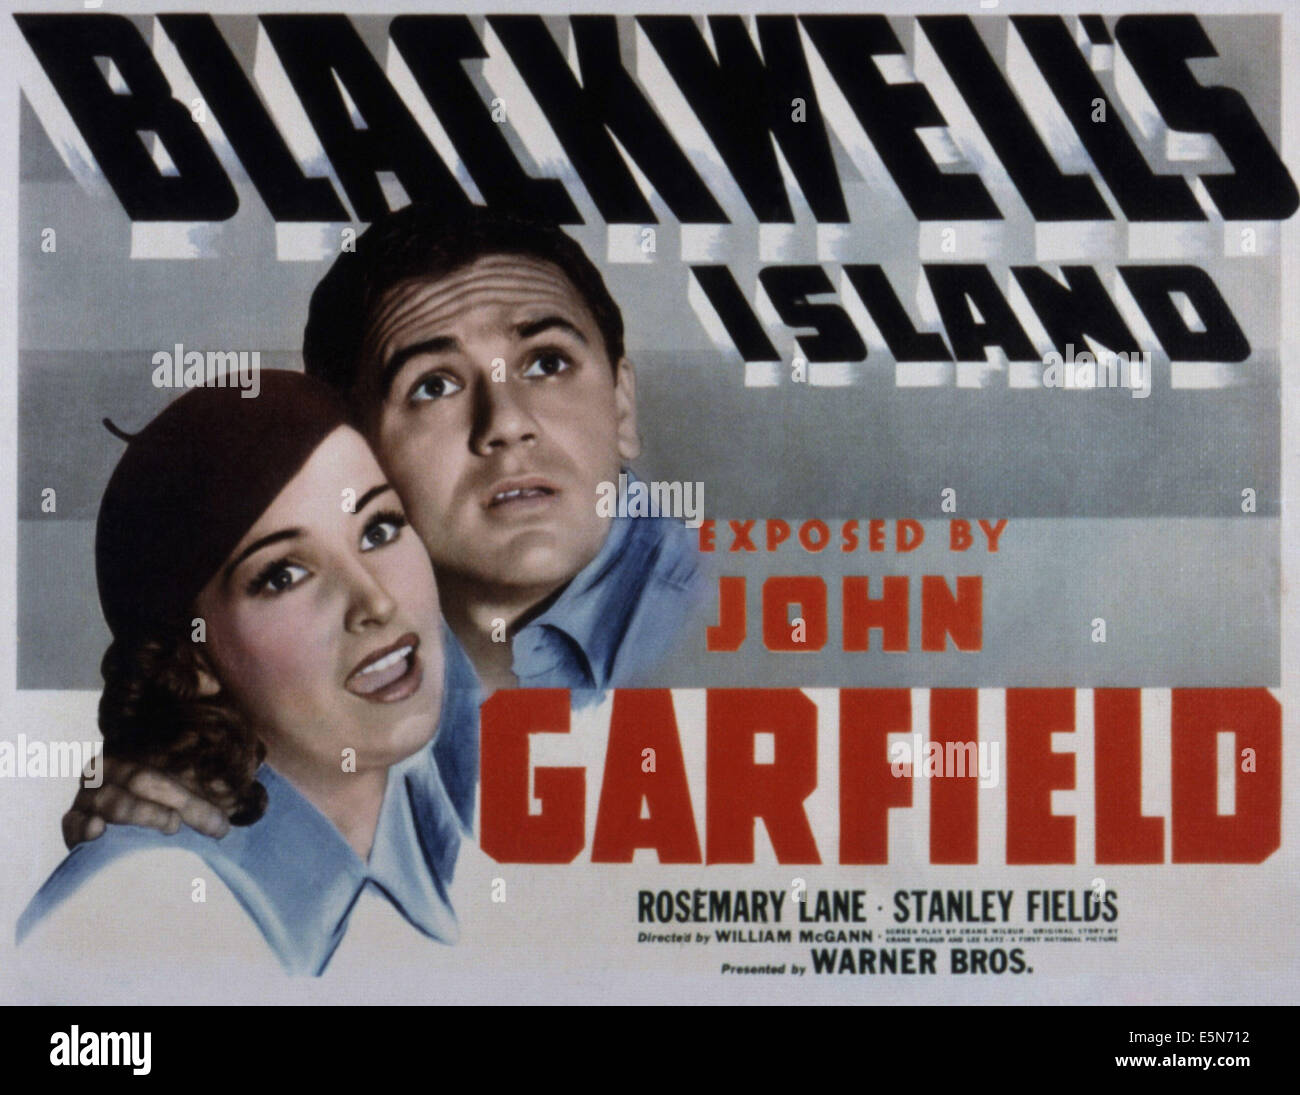 BLACKWELL ISLAND, Rosemary Lane, John Garfield, 1939 Foto Stock